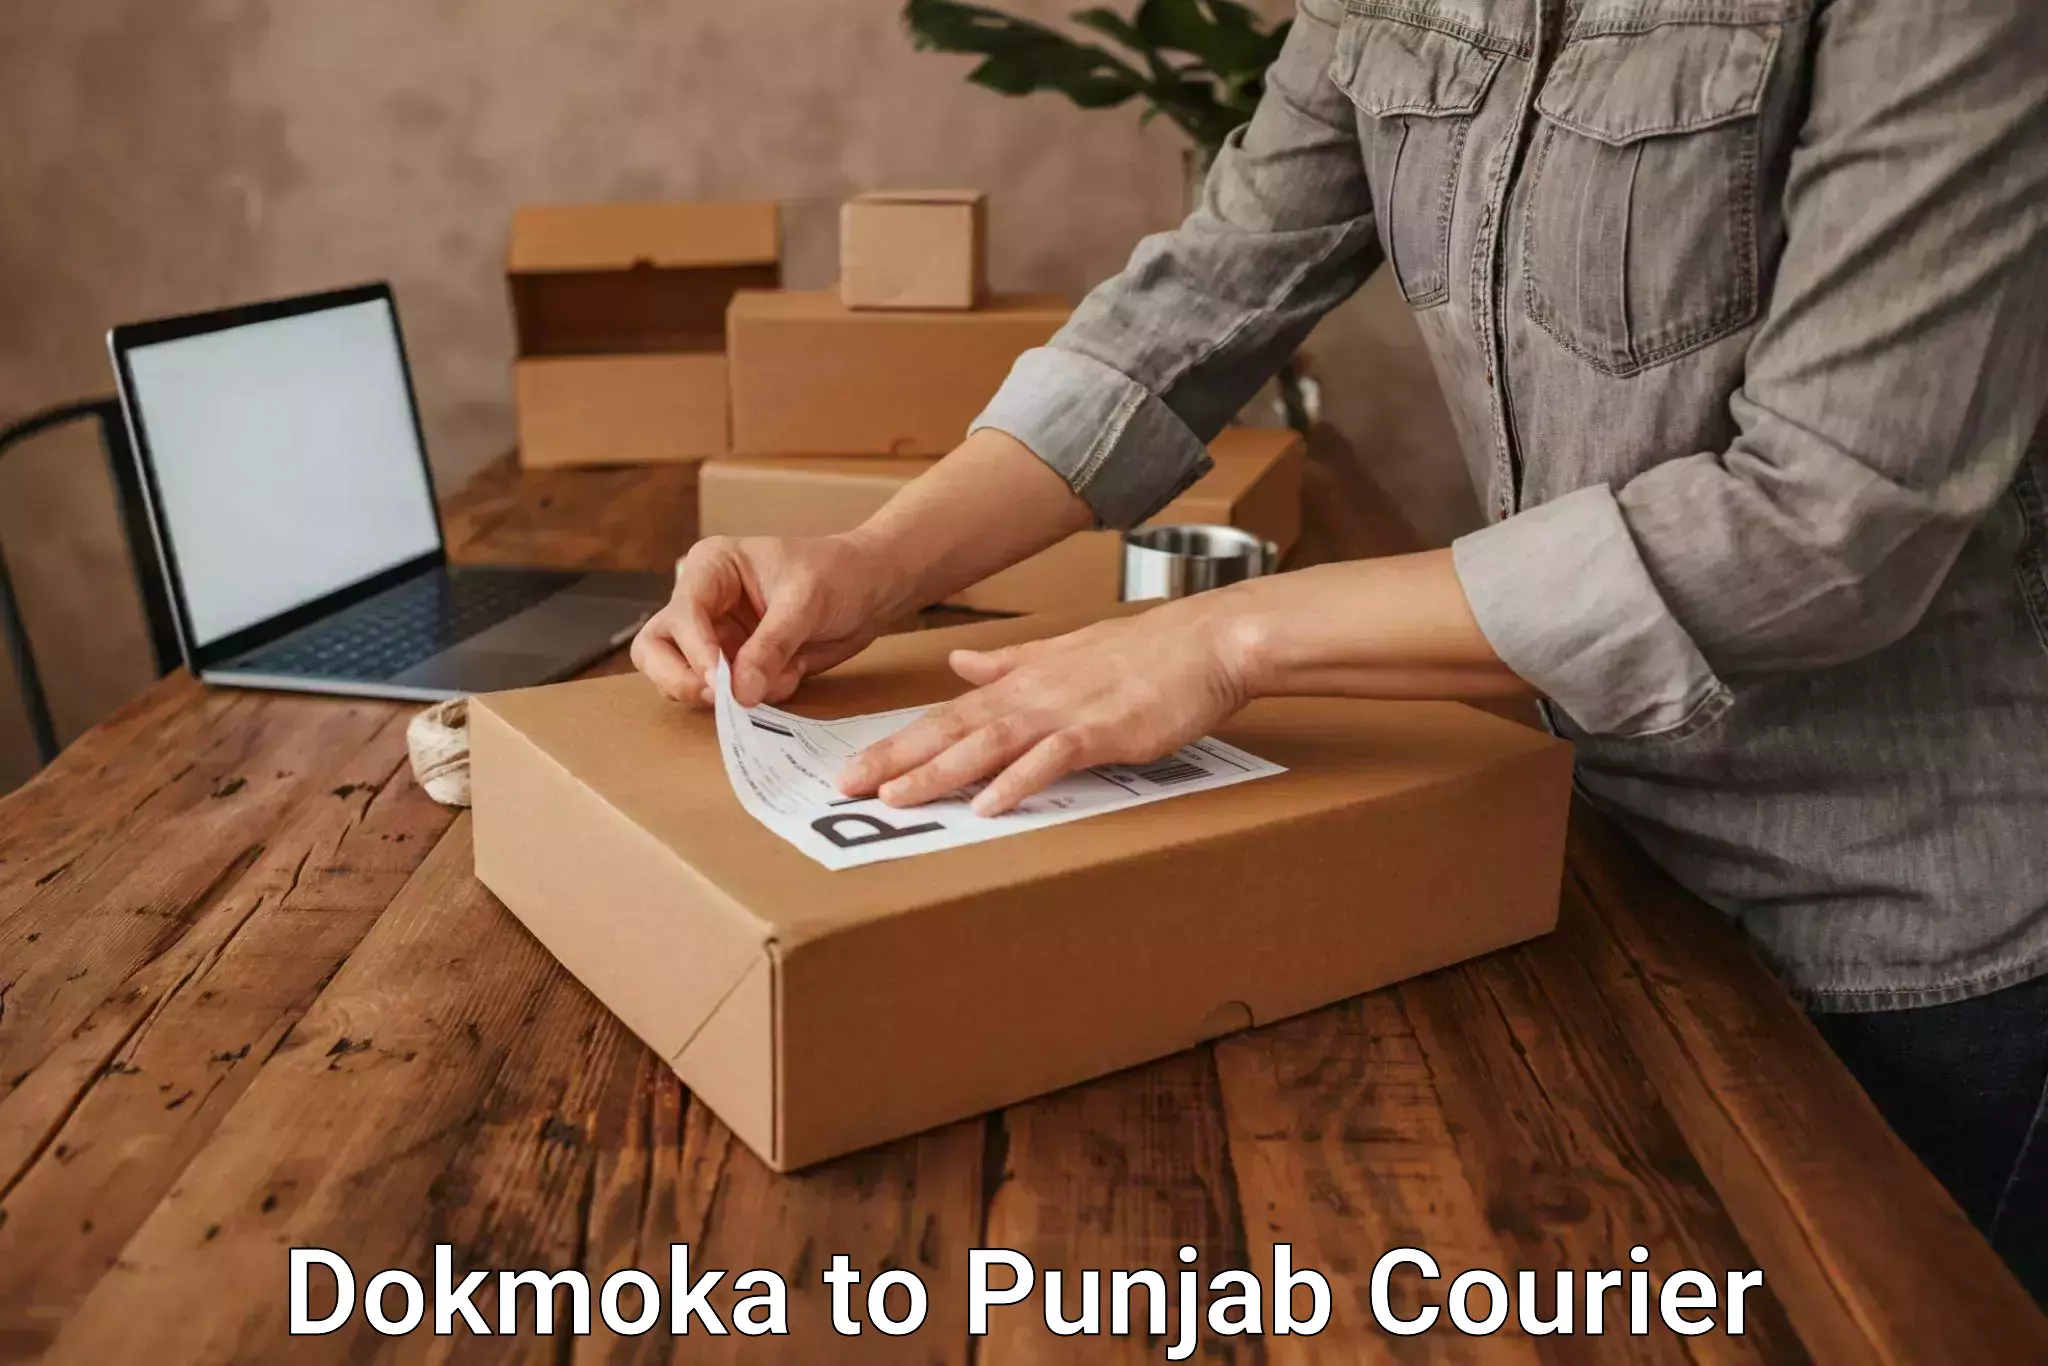 Professional parcel services Dokmoka to Zirakpur